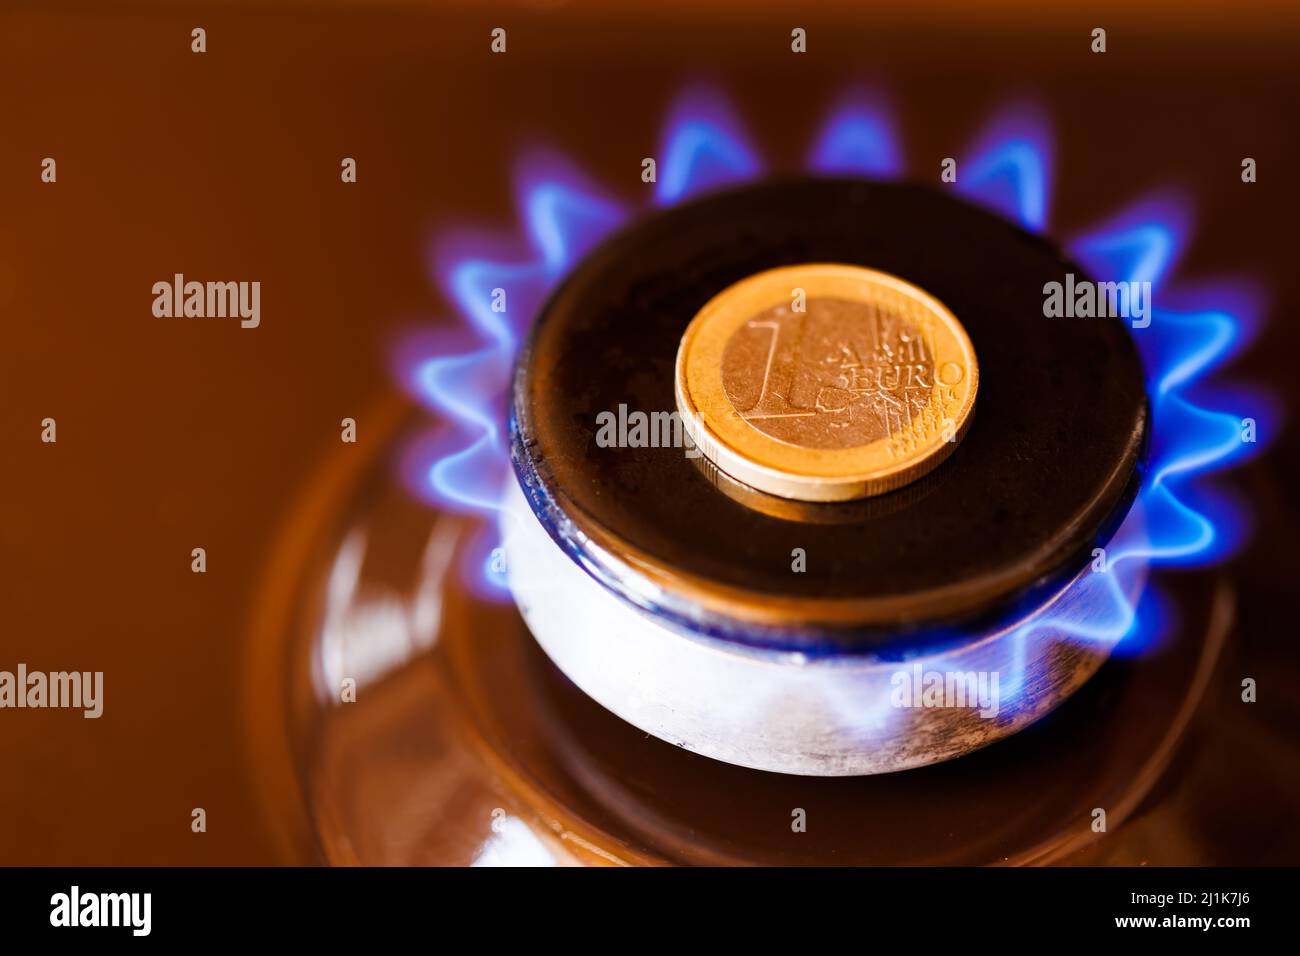 brûleur à gaz avec une pièce d'un euro posée sur le dessus, brûlant du gaz naturel avec une flamme bleue Banque D'Images